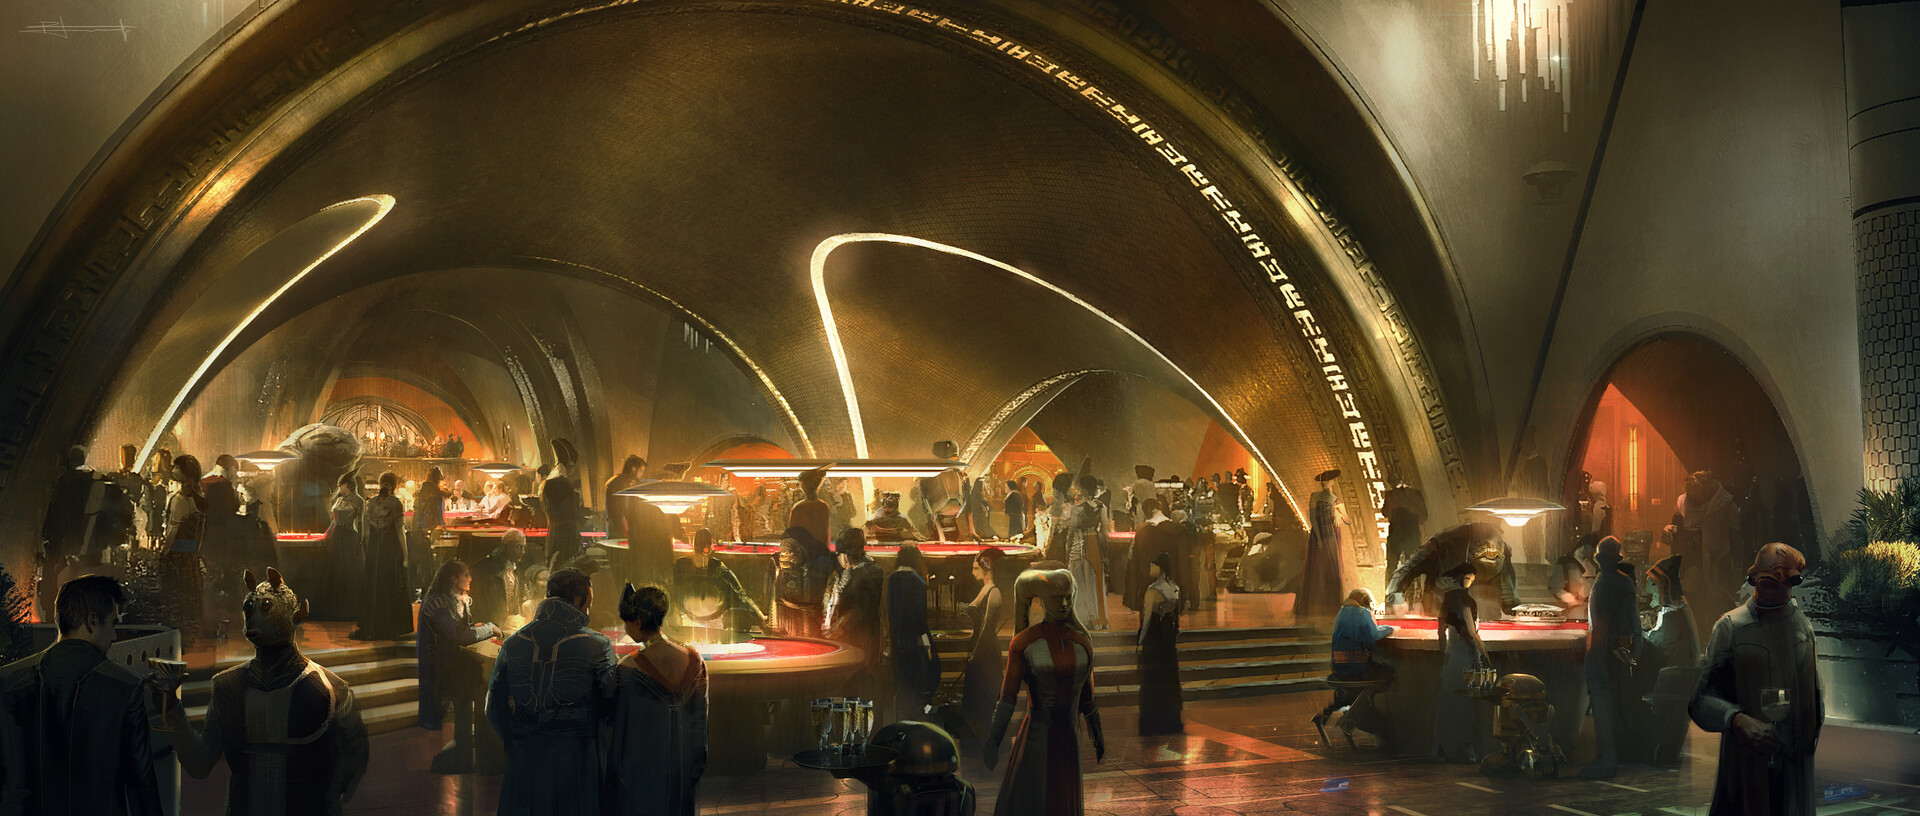 General 1920x816 artwork digital art Star Wars fantasy art futuristic casino Star Wars Droids